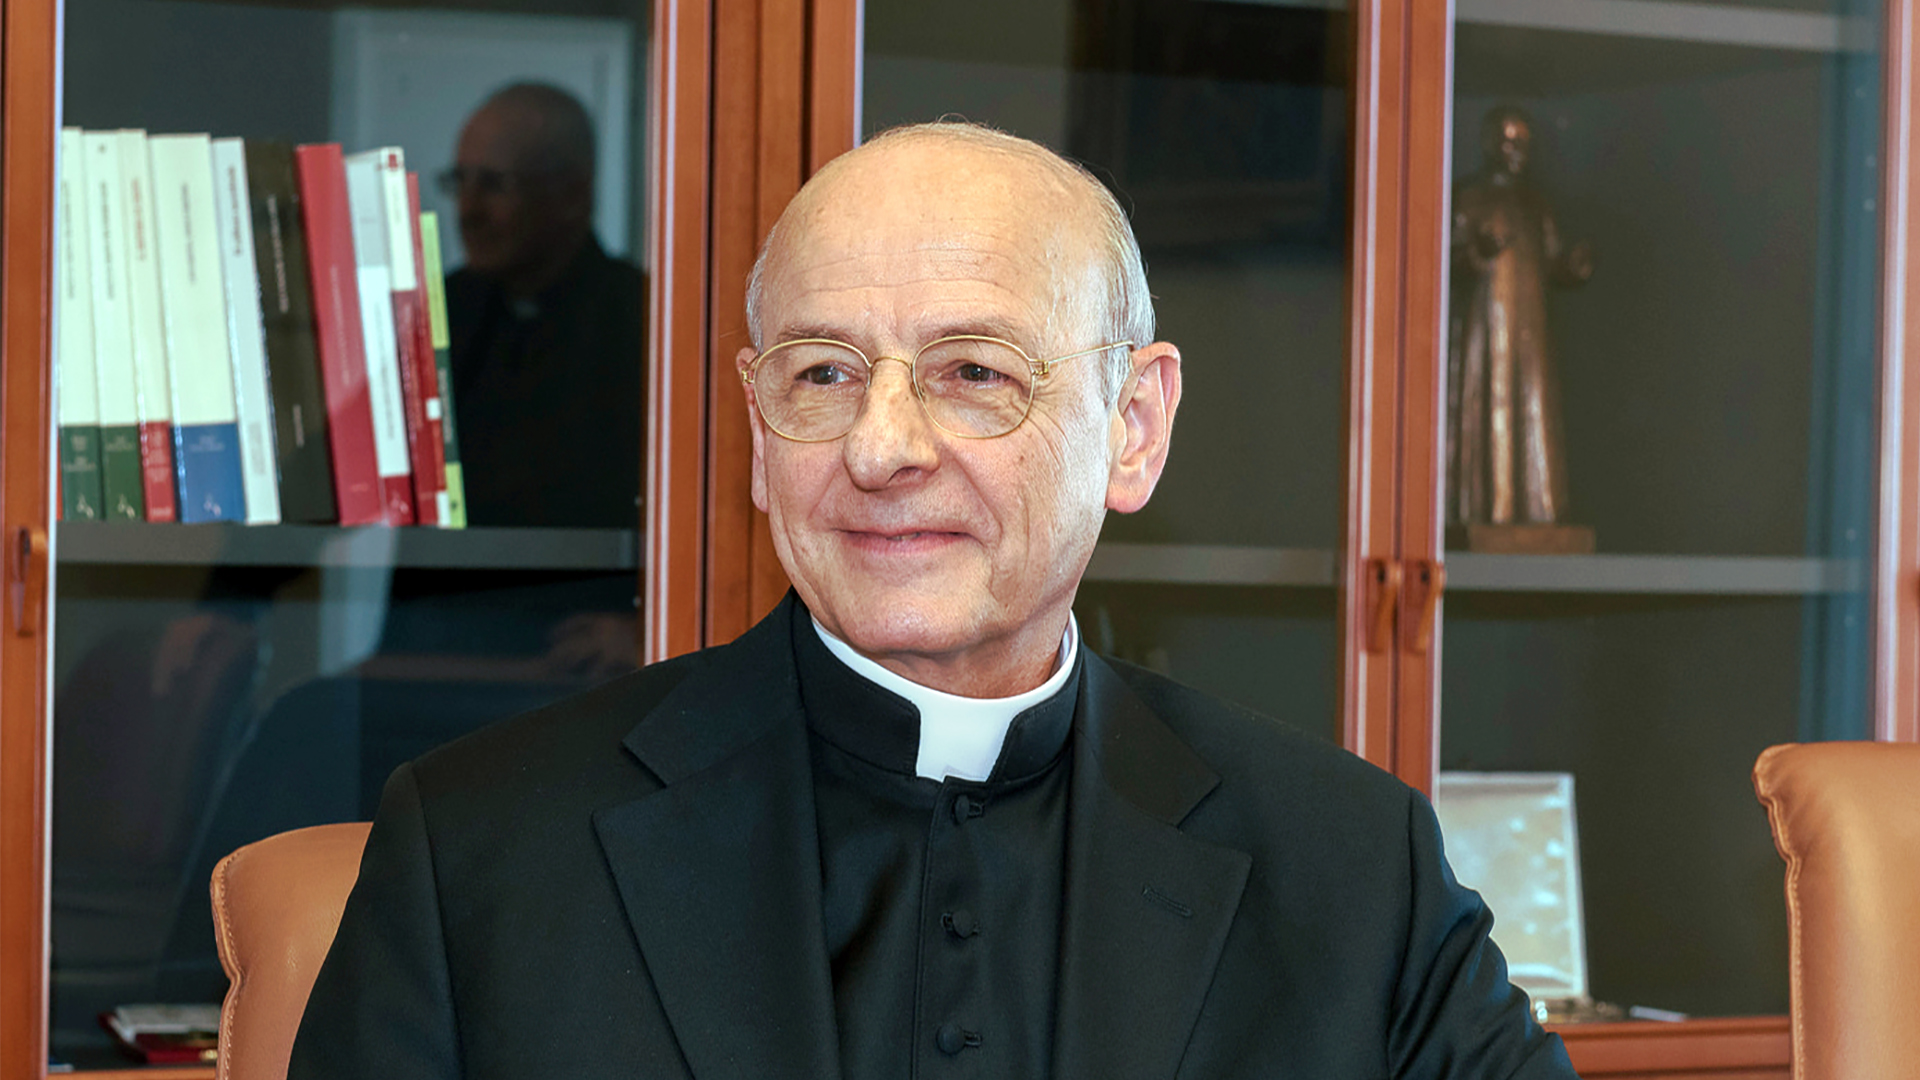 Mgr Fernando Ocáriz Braña est le prélat de l'Opus Dei depuis janvier 2017 | Wikimedia Commons / Gabriel12and / CC BY-SA 4.0